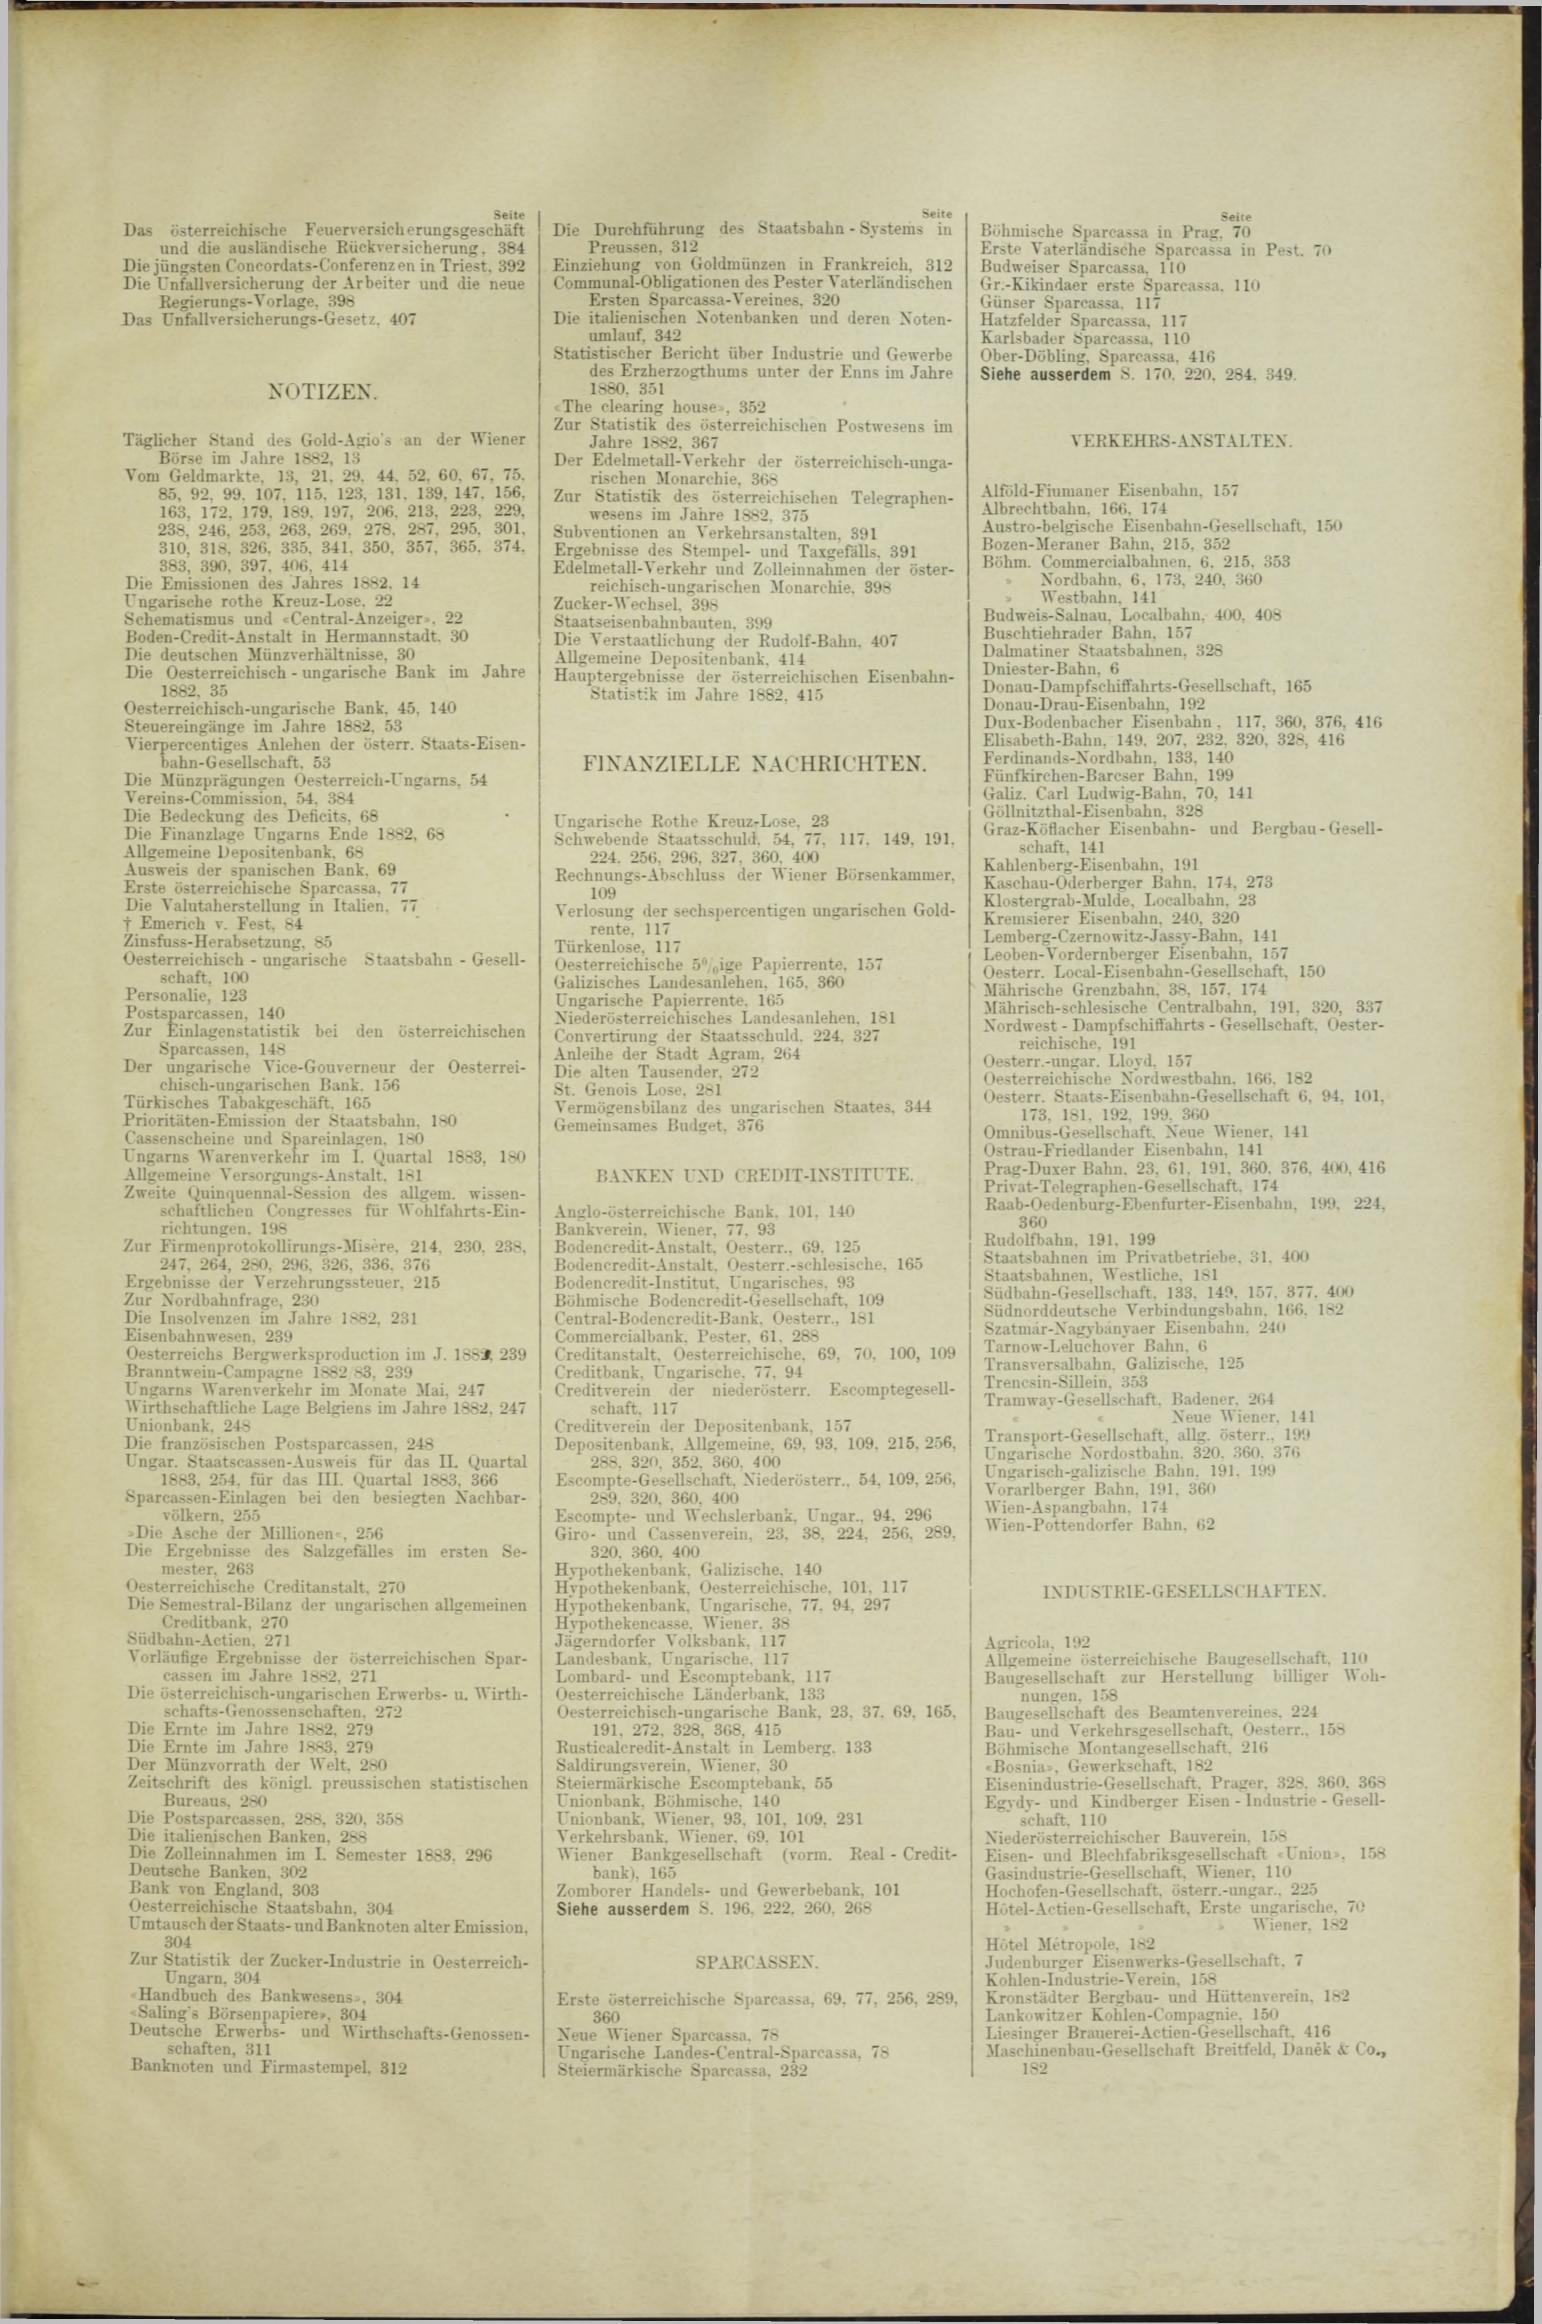 Der Tresor 22.03.1883 - Seite 11